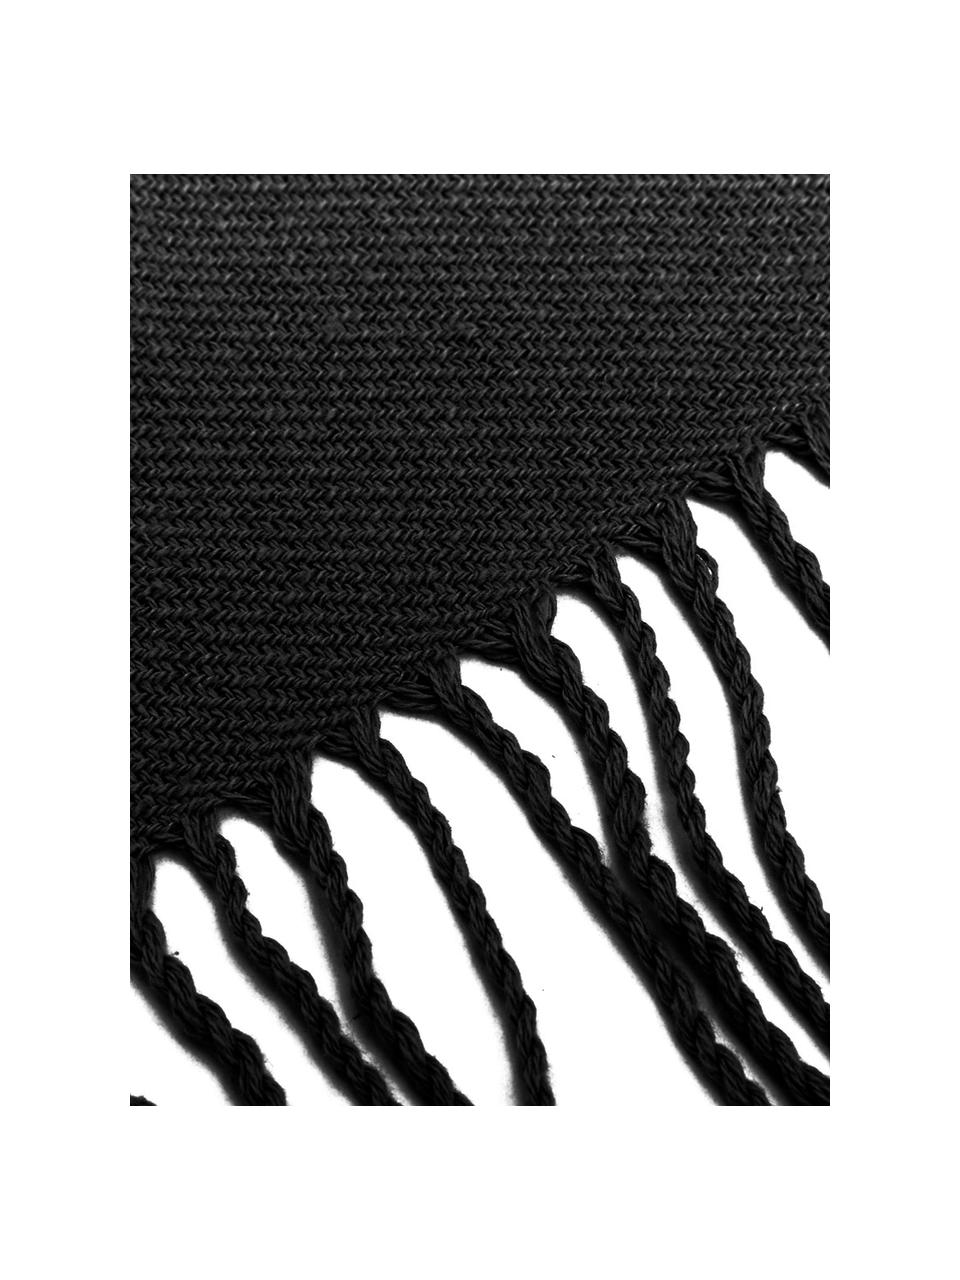 Baumwolldecke Madison in Schwarz mit Fransenabschluss, 100% Baumwolle, Schwarz, B 140 x L 170 cm